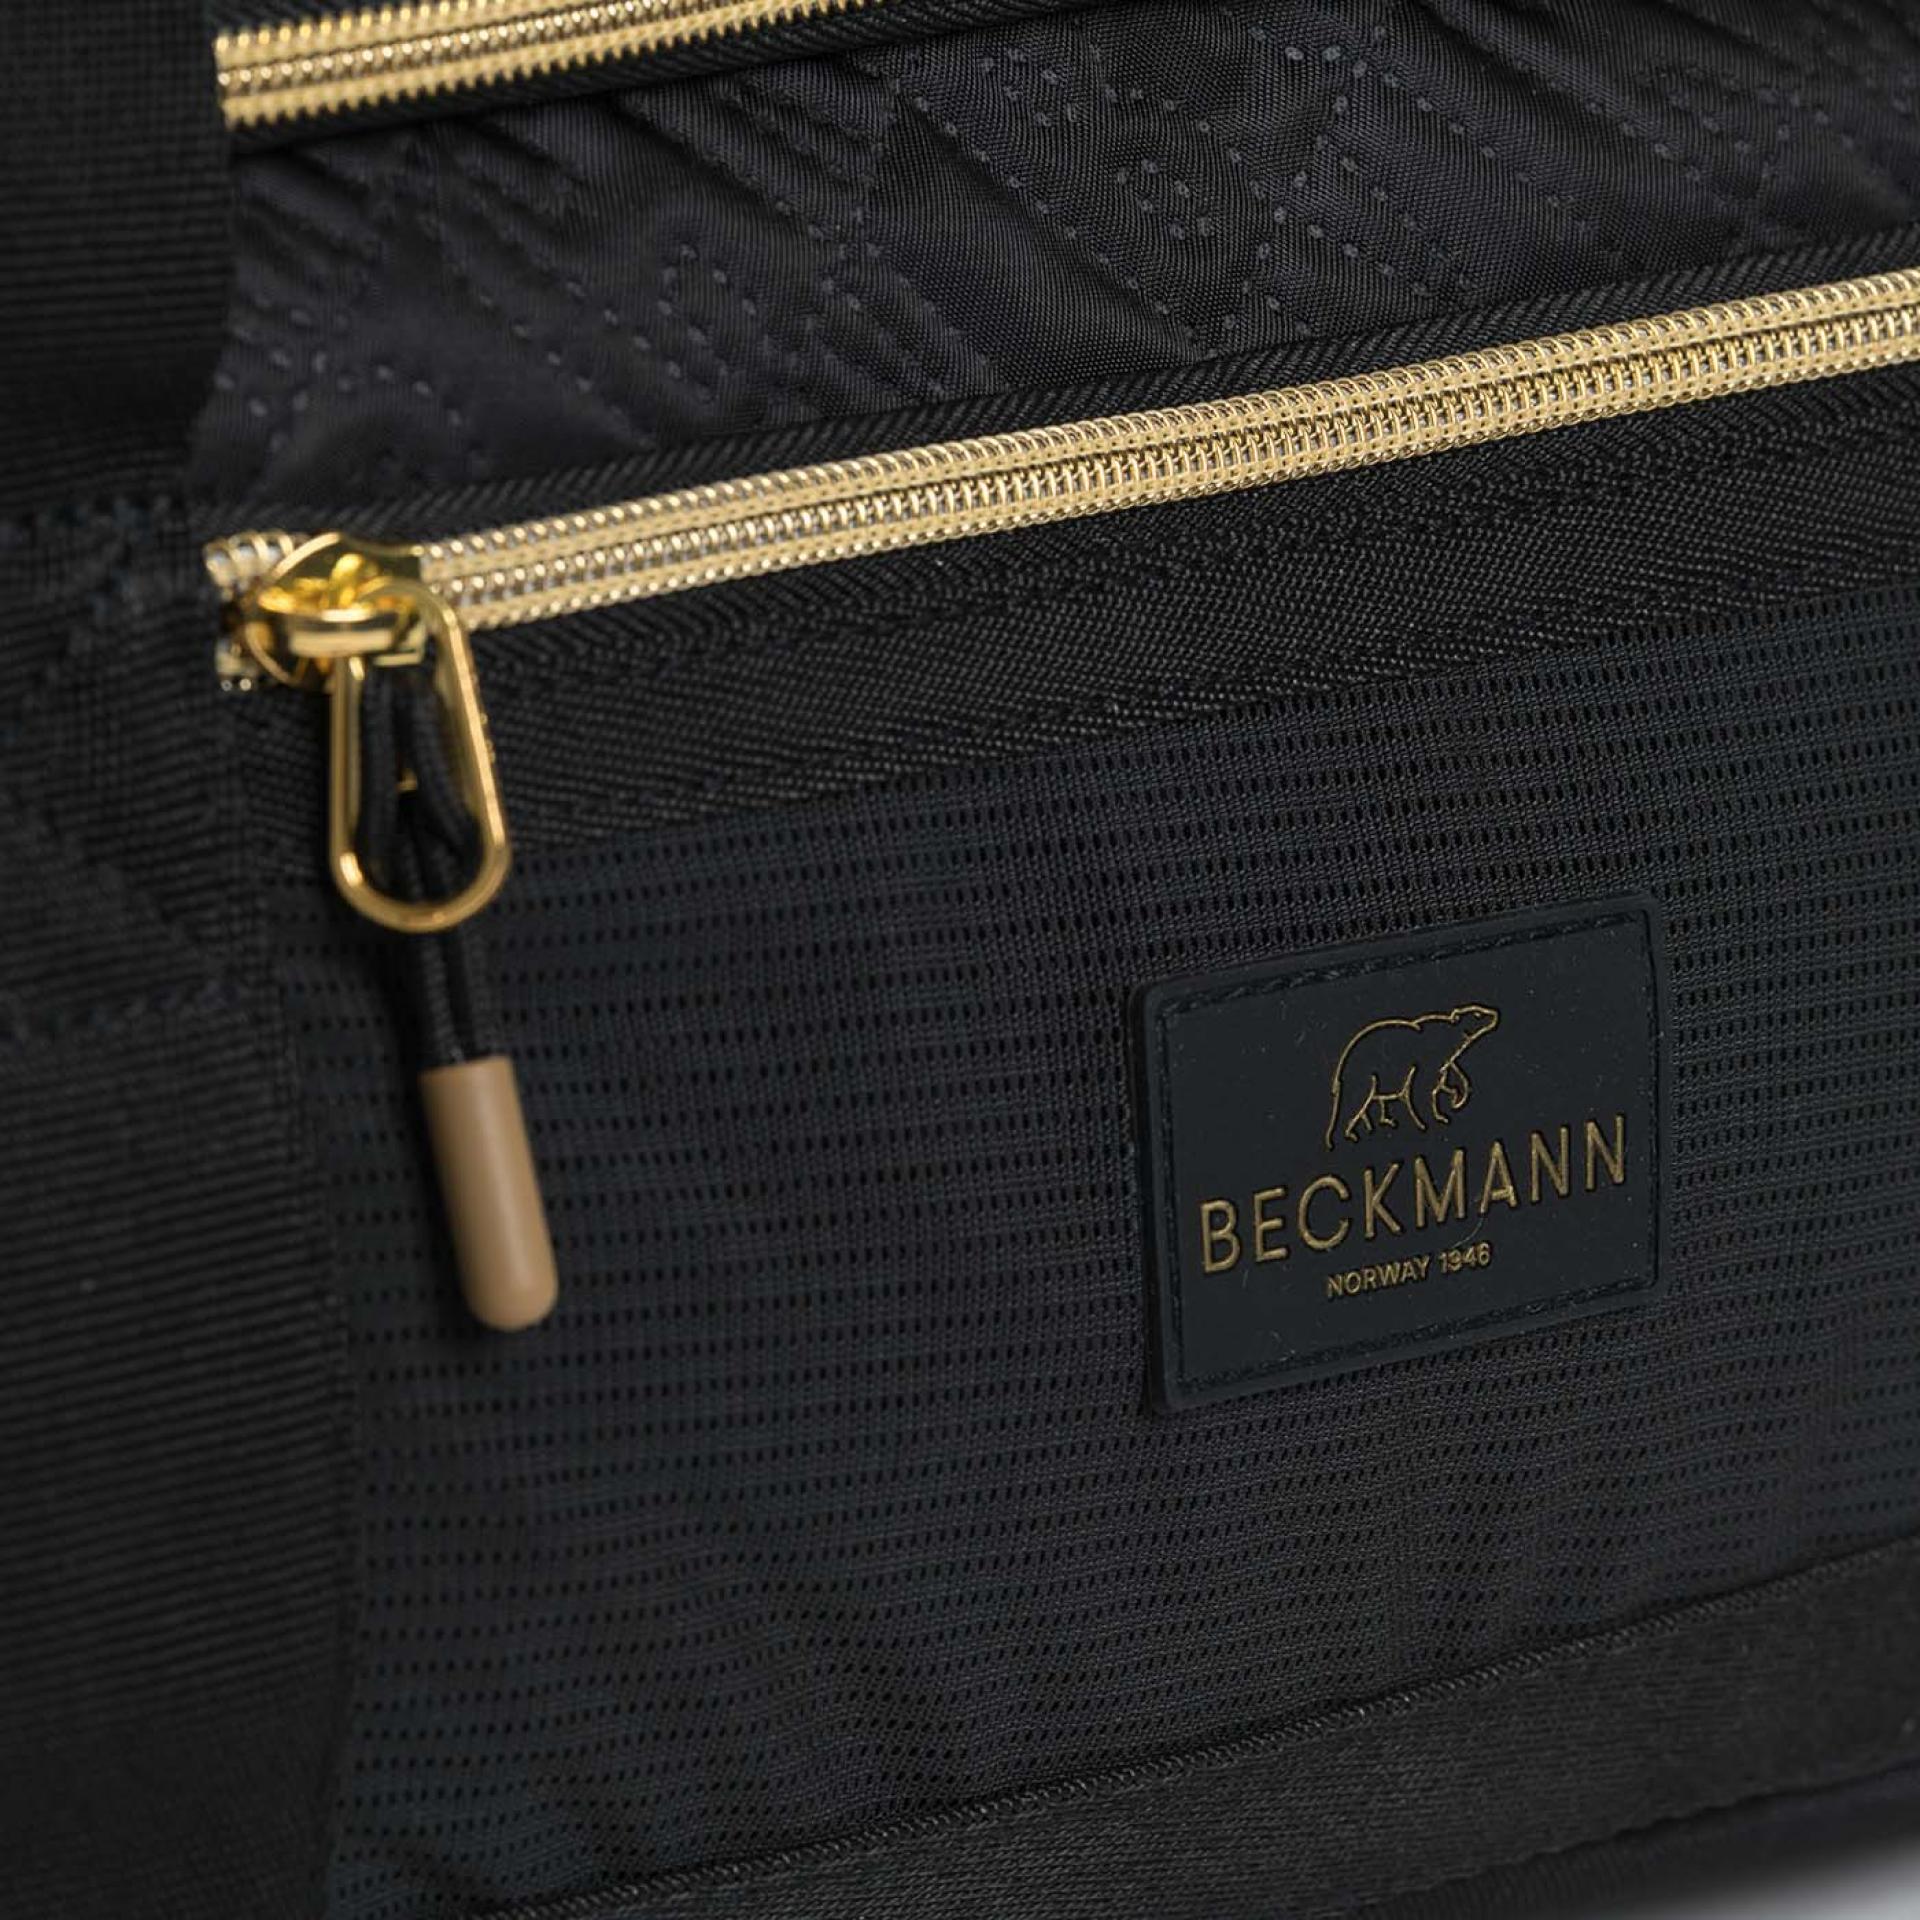 Beckmann Sporttasche Duffelbag Black/Gold